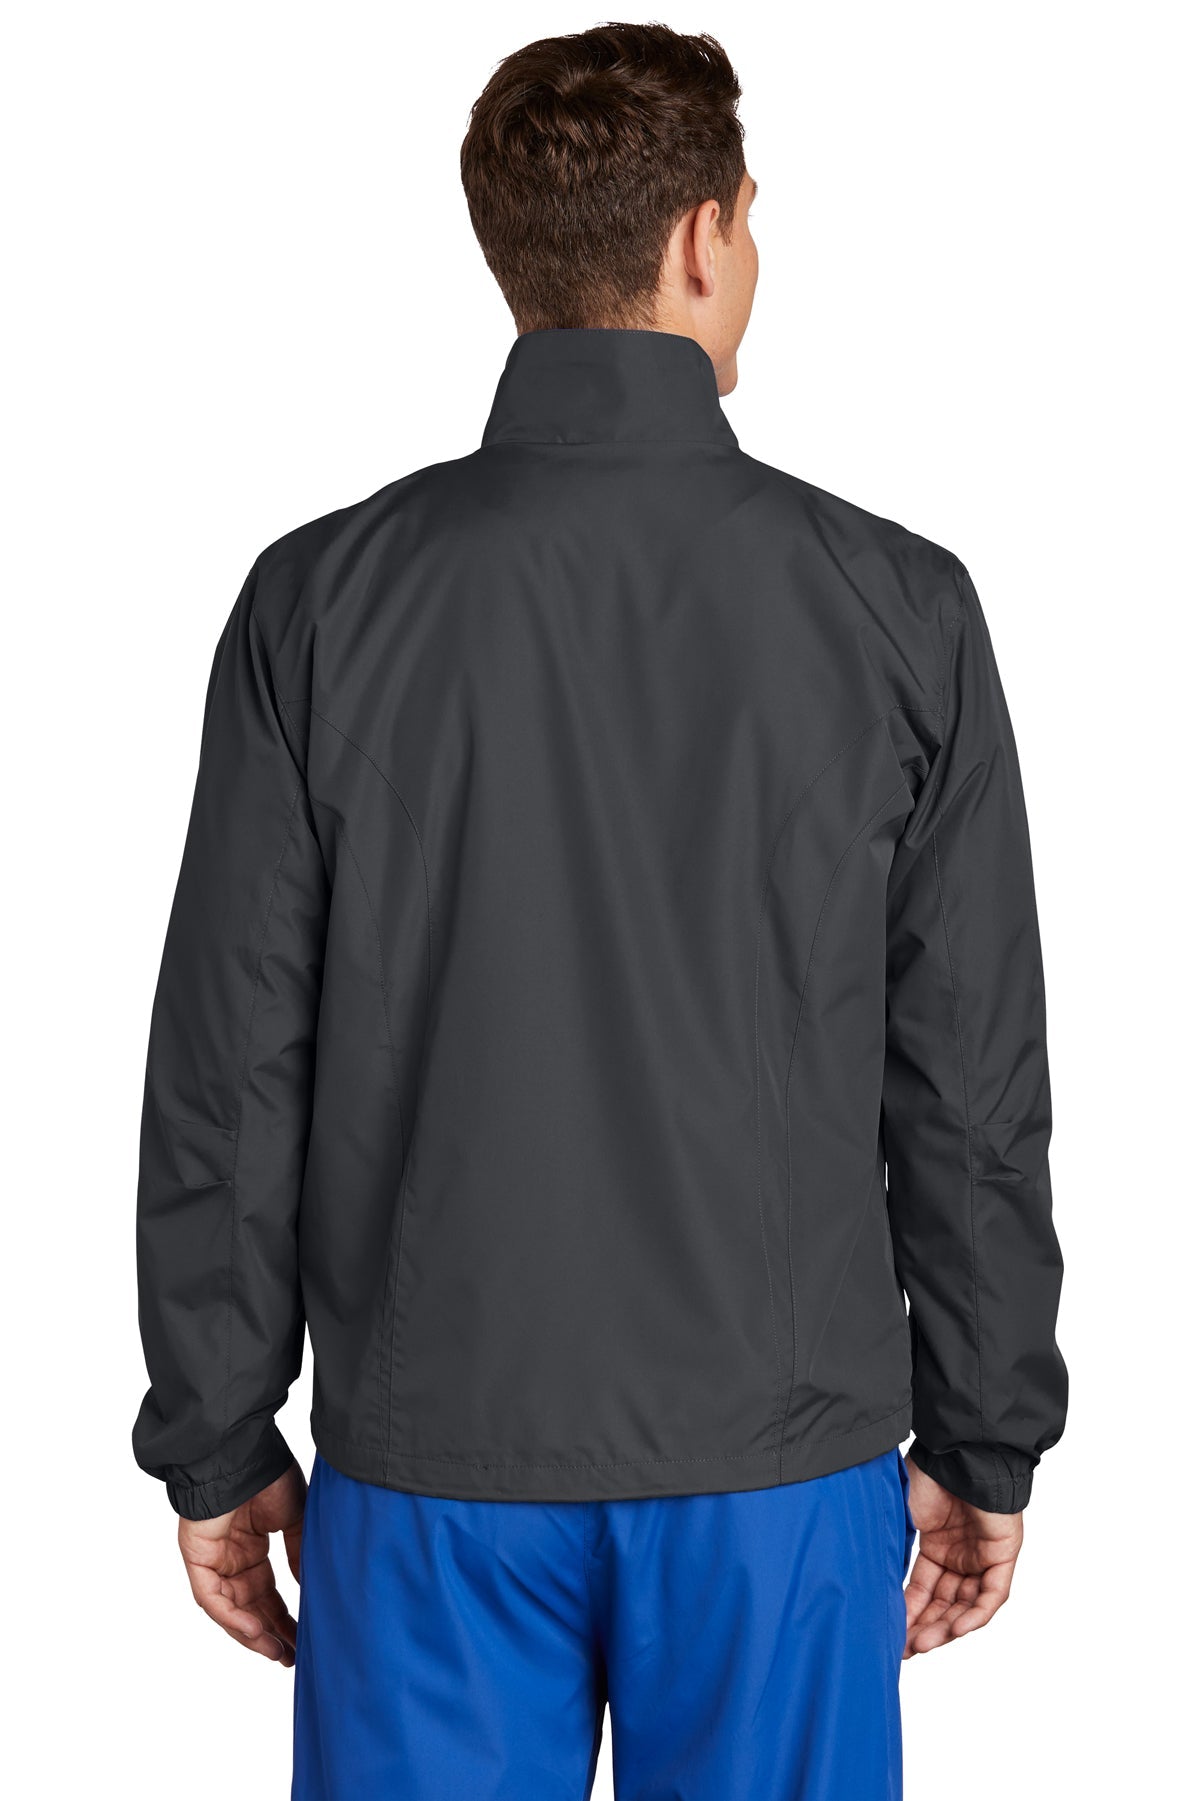 sport-tek_jst70 _graphite grey_company_logo_jackets